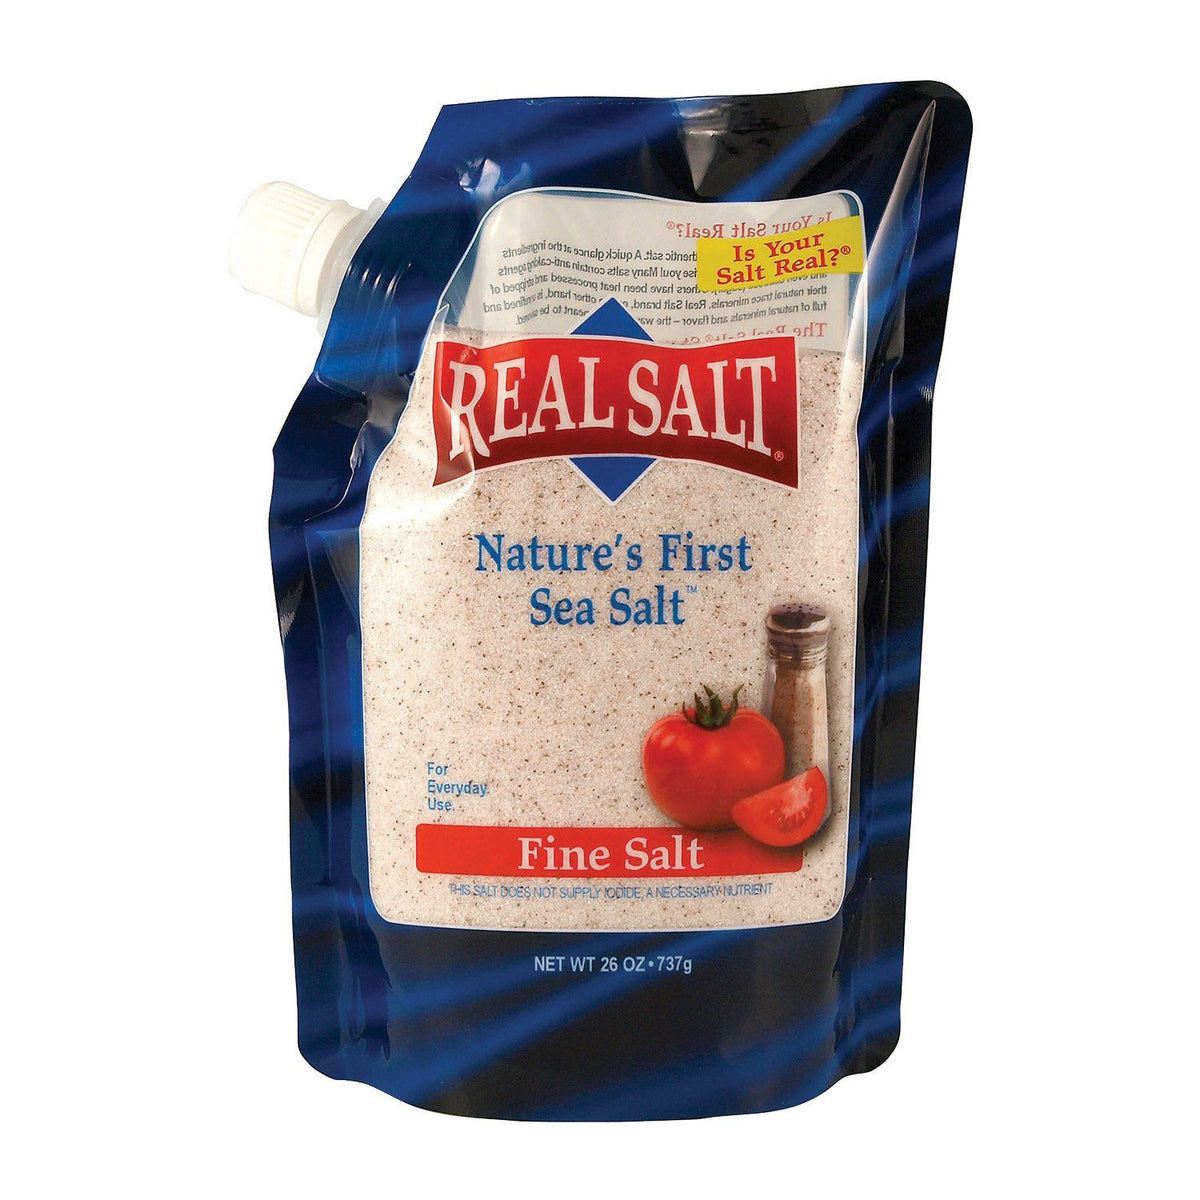 REDMOND Real Fine Salt (737 gr)